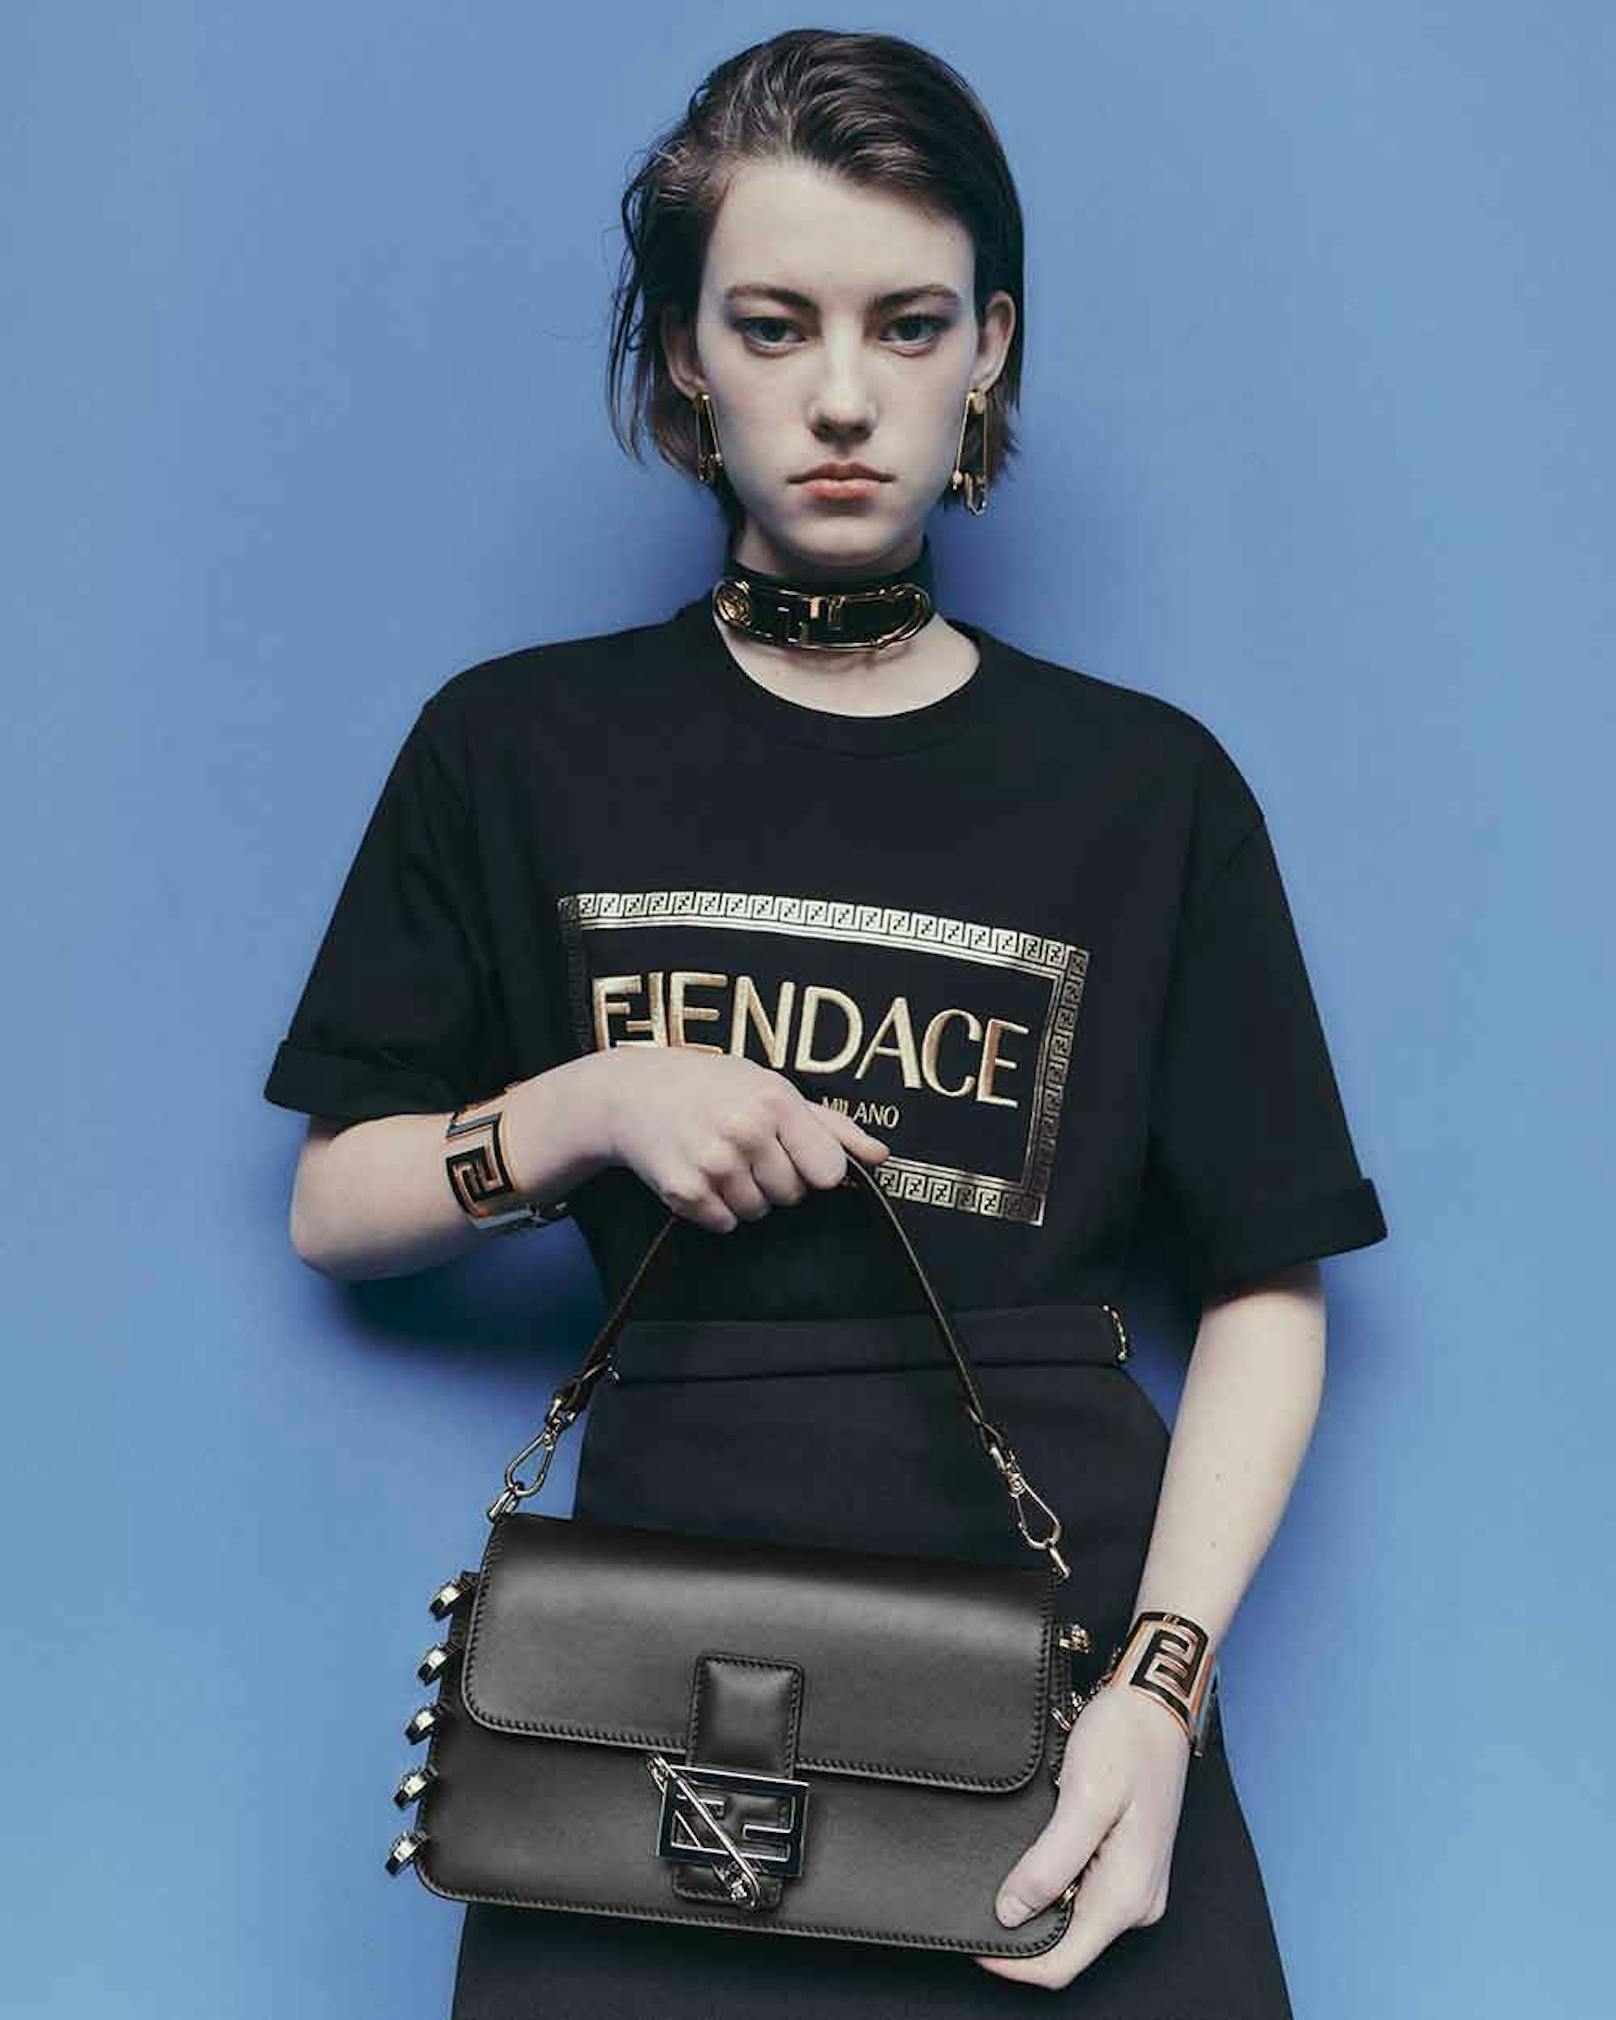 Fendace. Das gemeinsame Projekt von Versace und Fendi kommt jetzt in die Läden.